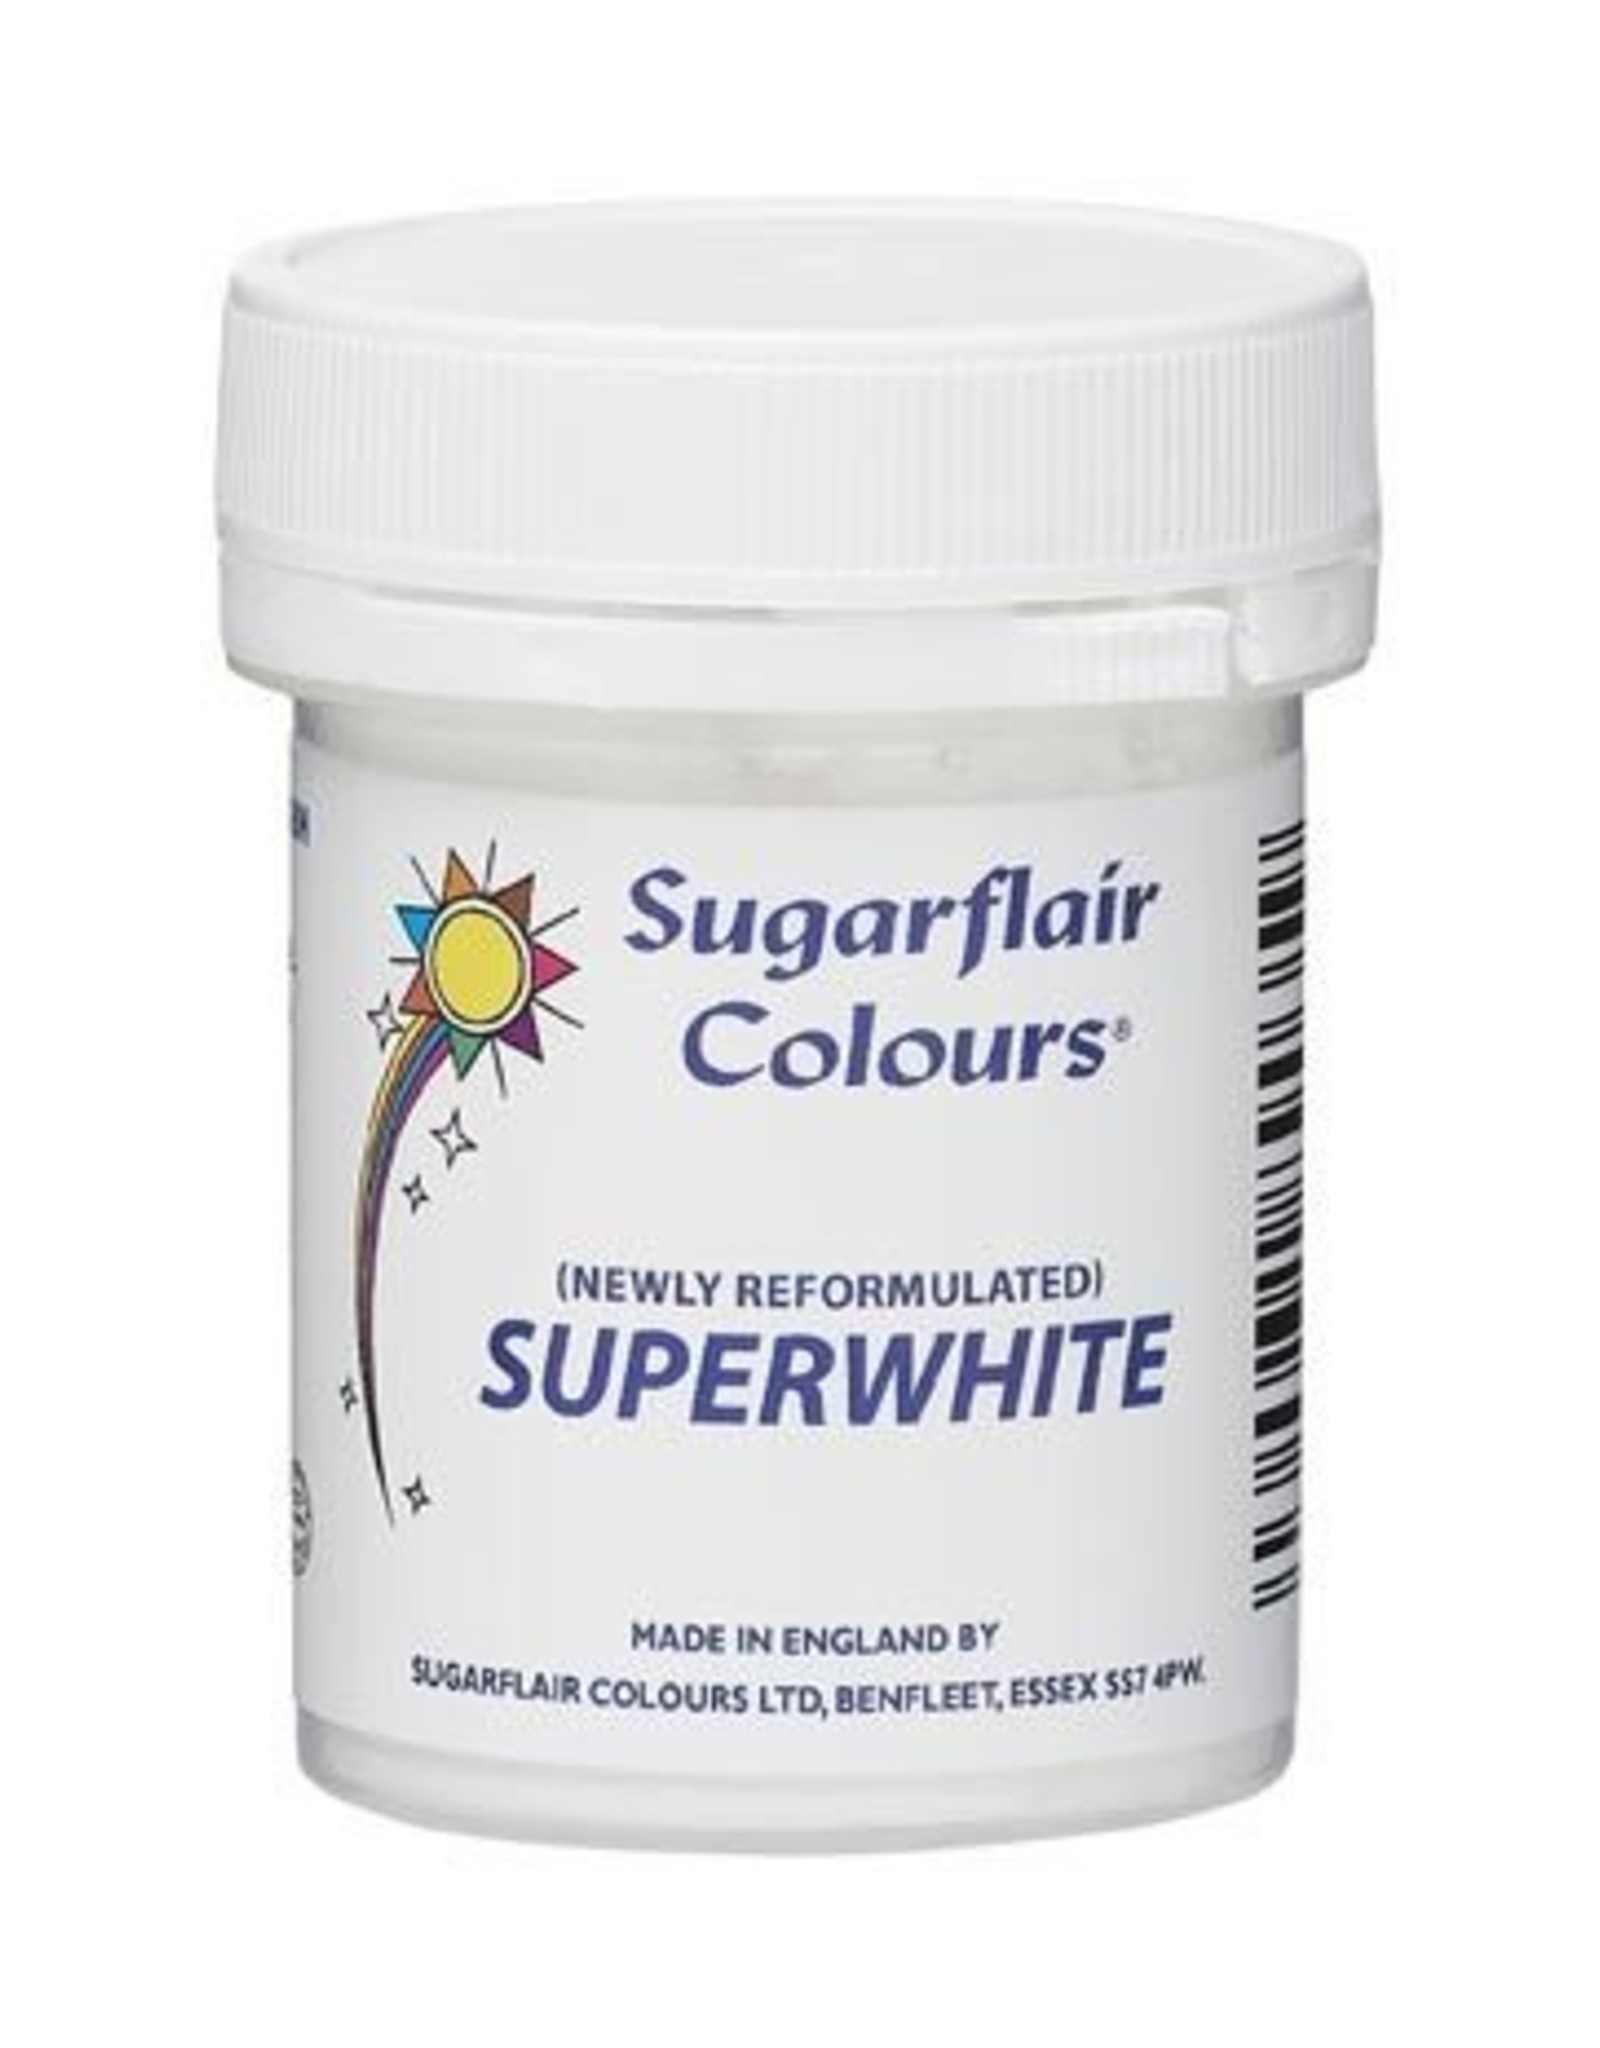 Sugarflair Sugarflair Superwhite Icing Whitener 20g